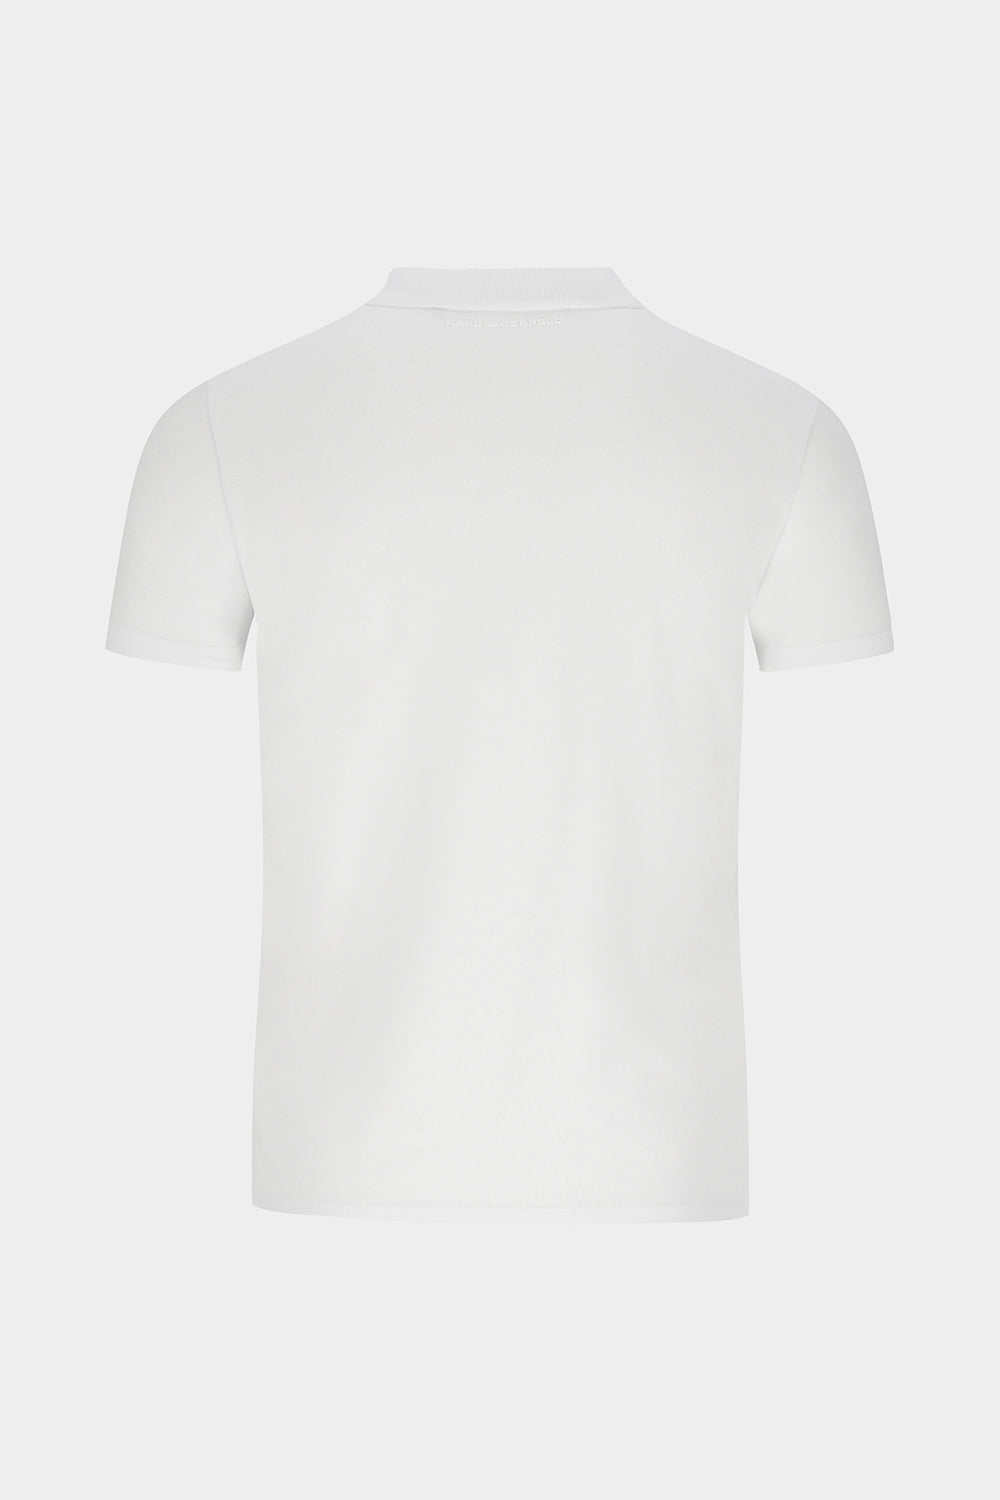 חולצת פולו לגברים בצבע לבן KARL LAGERFELD KARL LAGERFELD Vendome online | ונדום .